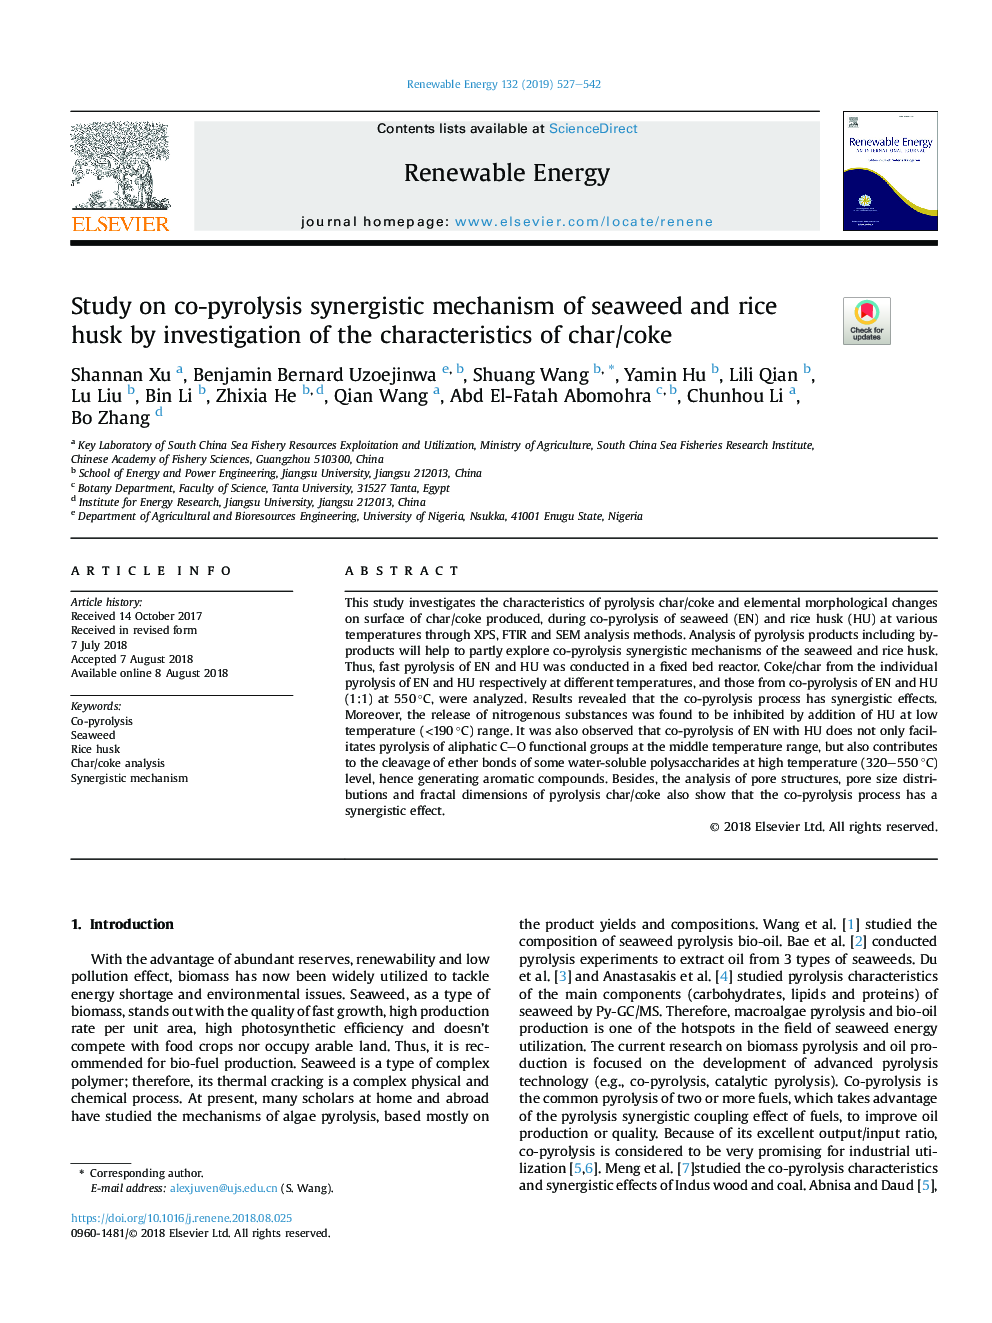 بررسی مکانیسم سینرژیک همپرولیز جلبک دریایی و پوسته برنج با بررسی ویژگی های چربی / کک